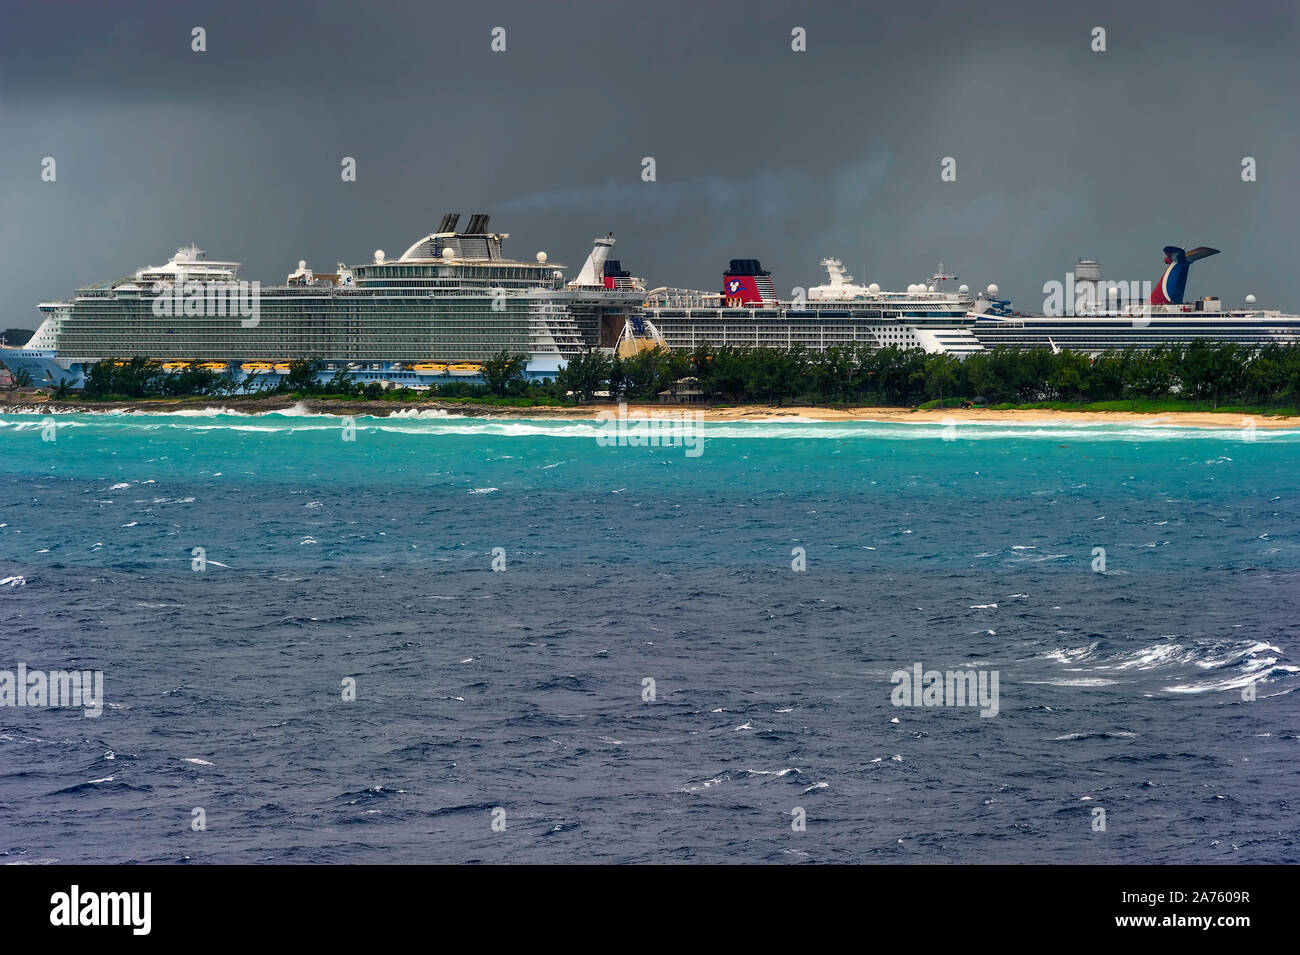 Nassau, Bahamas - septembre 21,2019 : Vues de navire de croisière encore à Prince George Warf de à bord d'un bateau de croisière au départ du port de Nassau. Banque D'Images